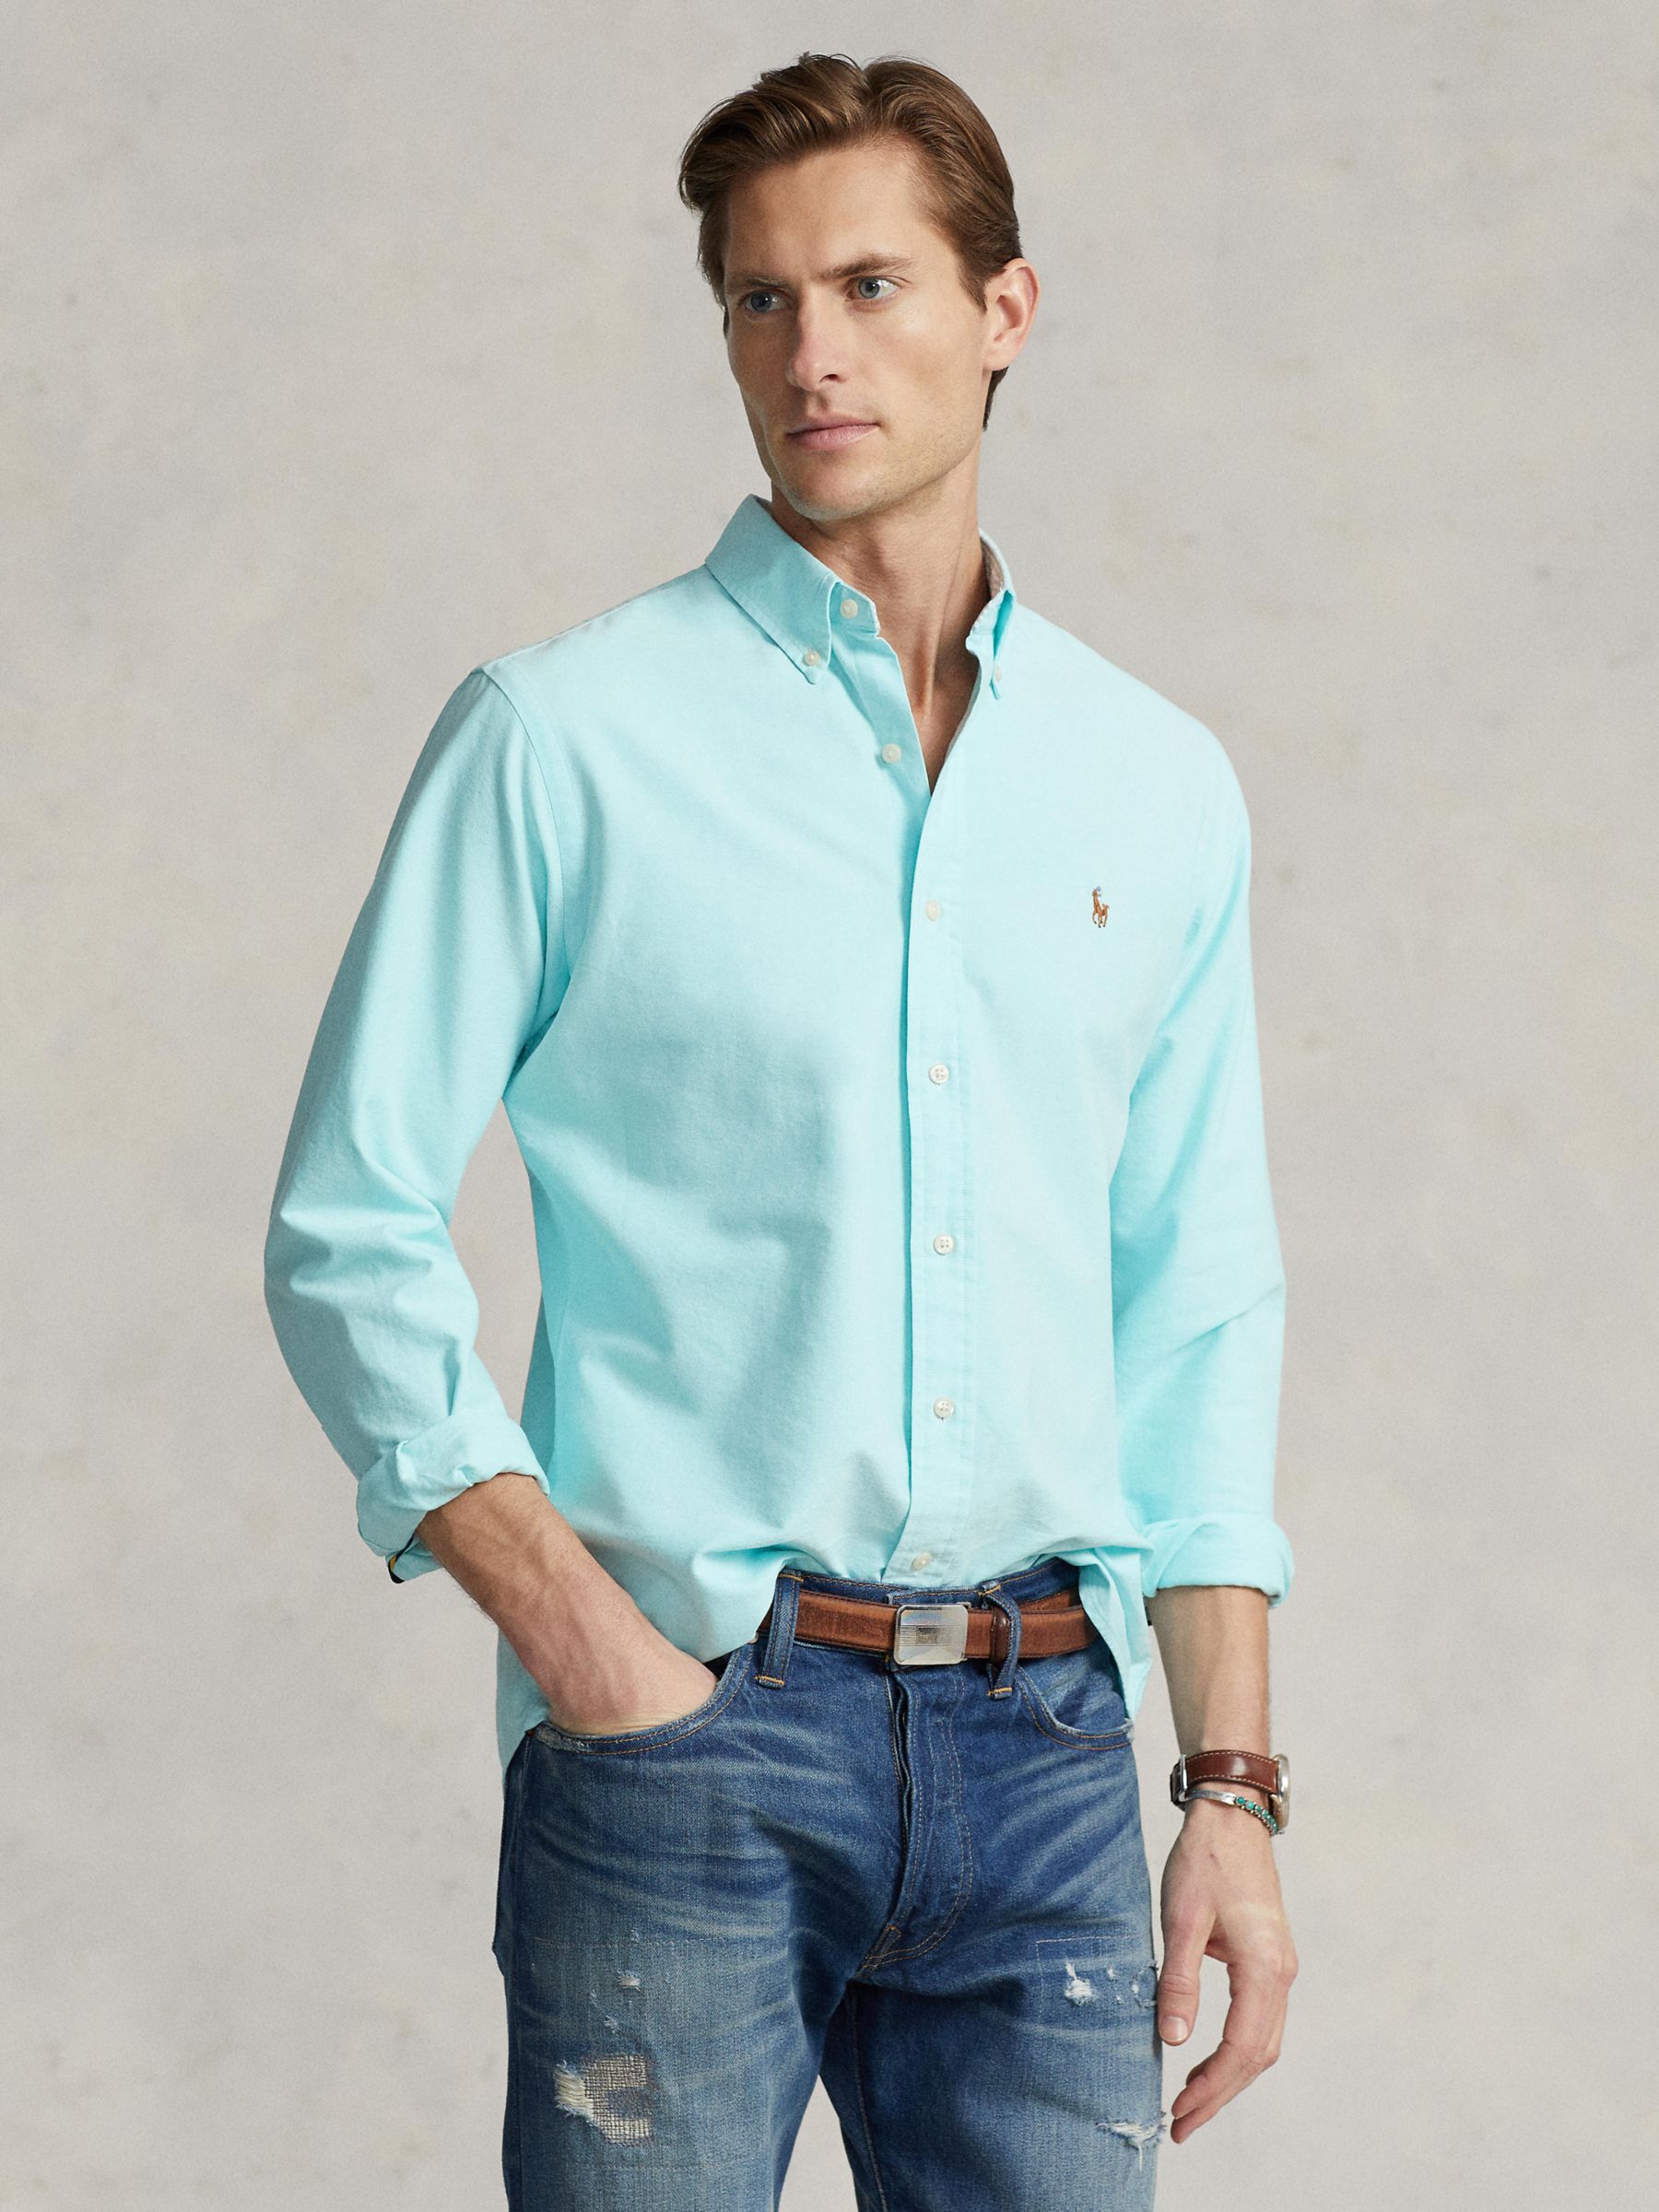 Ralph Lauren Long Sleeve Oxford Shirt, Blue, XXL